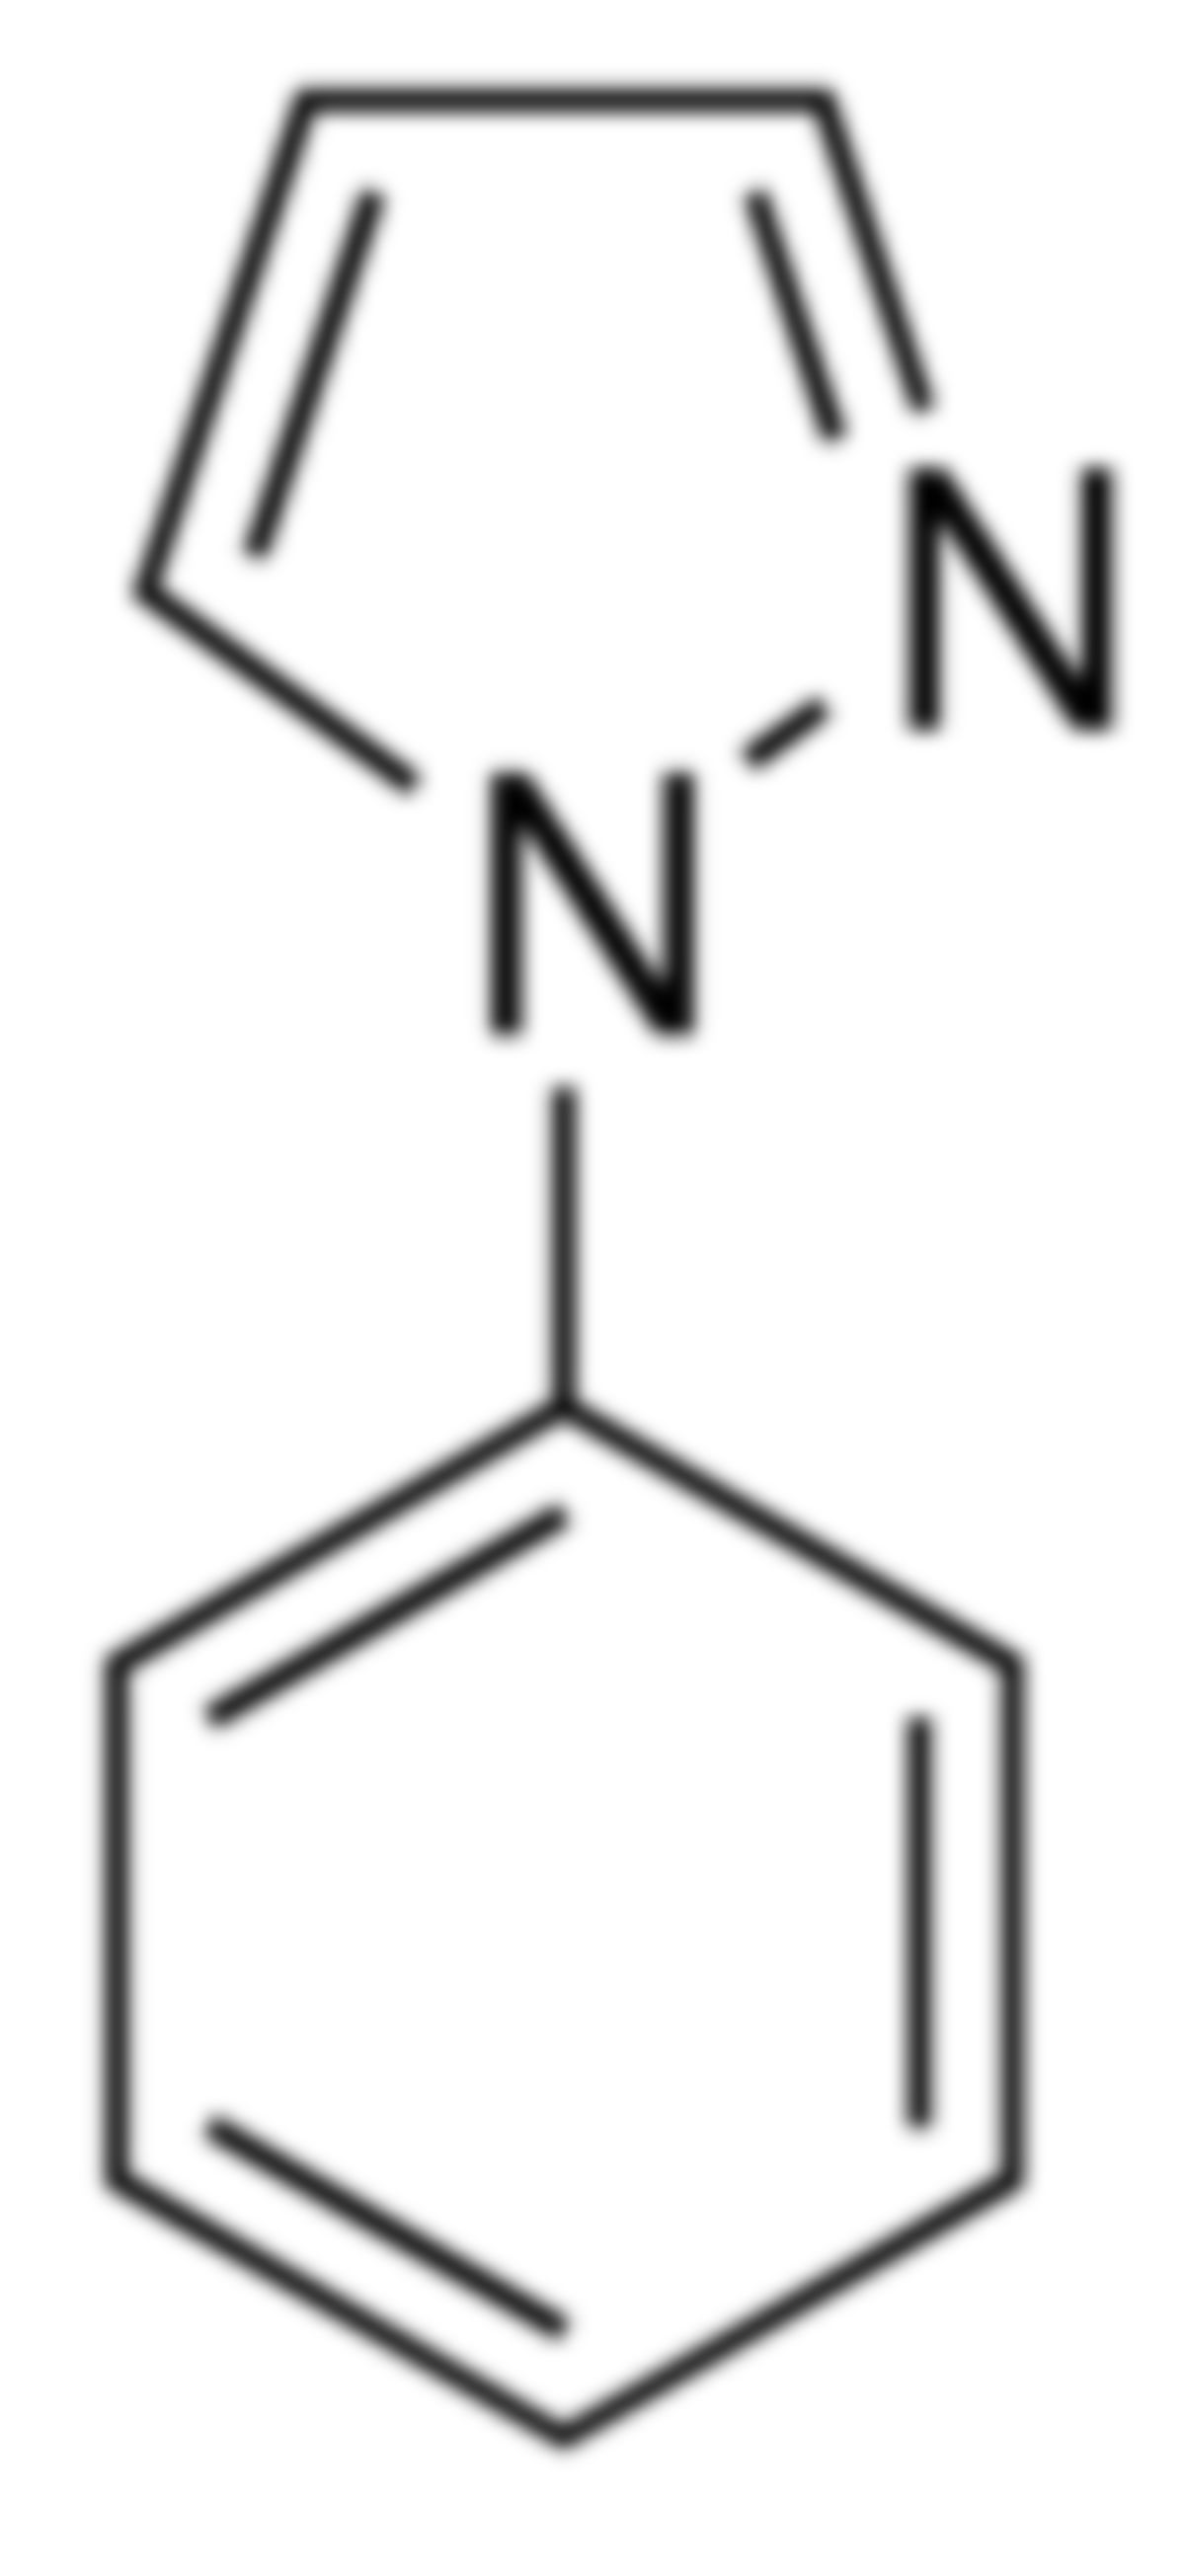 1-phenylpyrazol